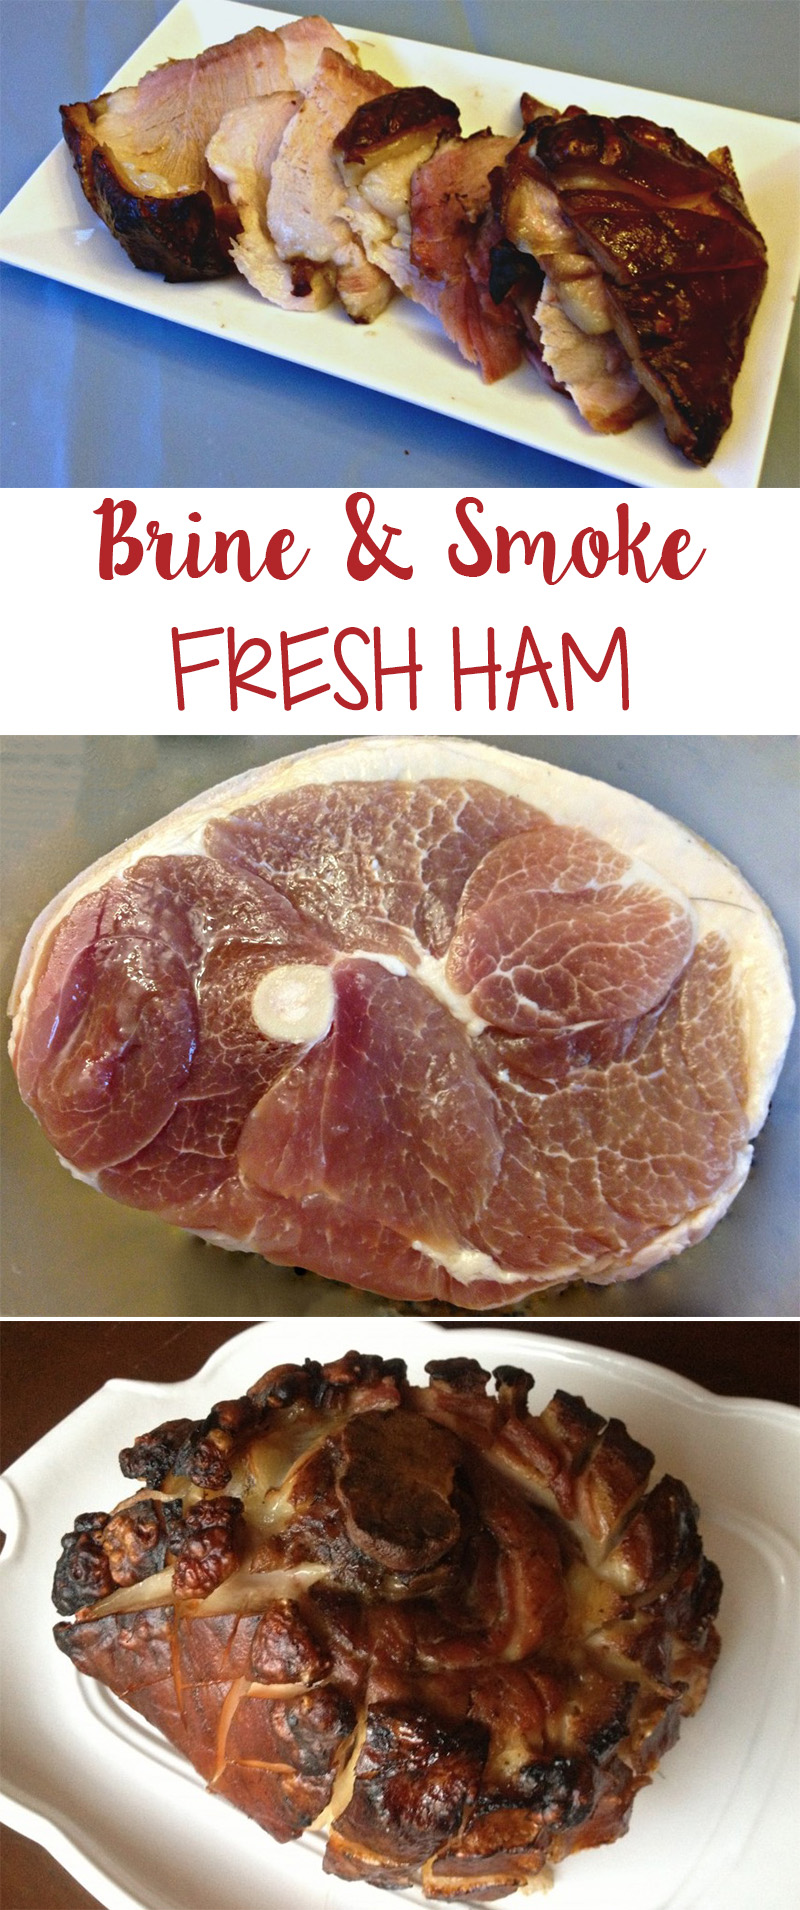 How To Brine & Smoke Fresh Ham - Our Potluck Family